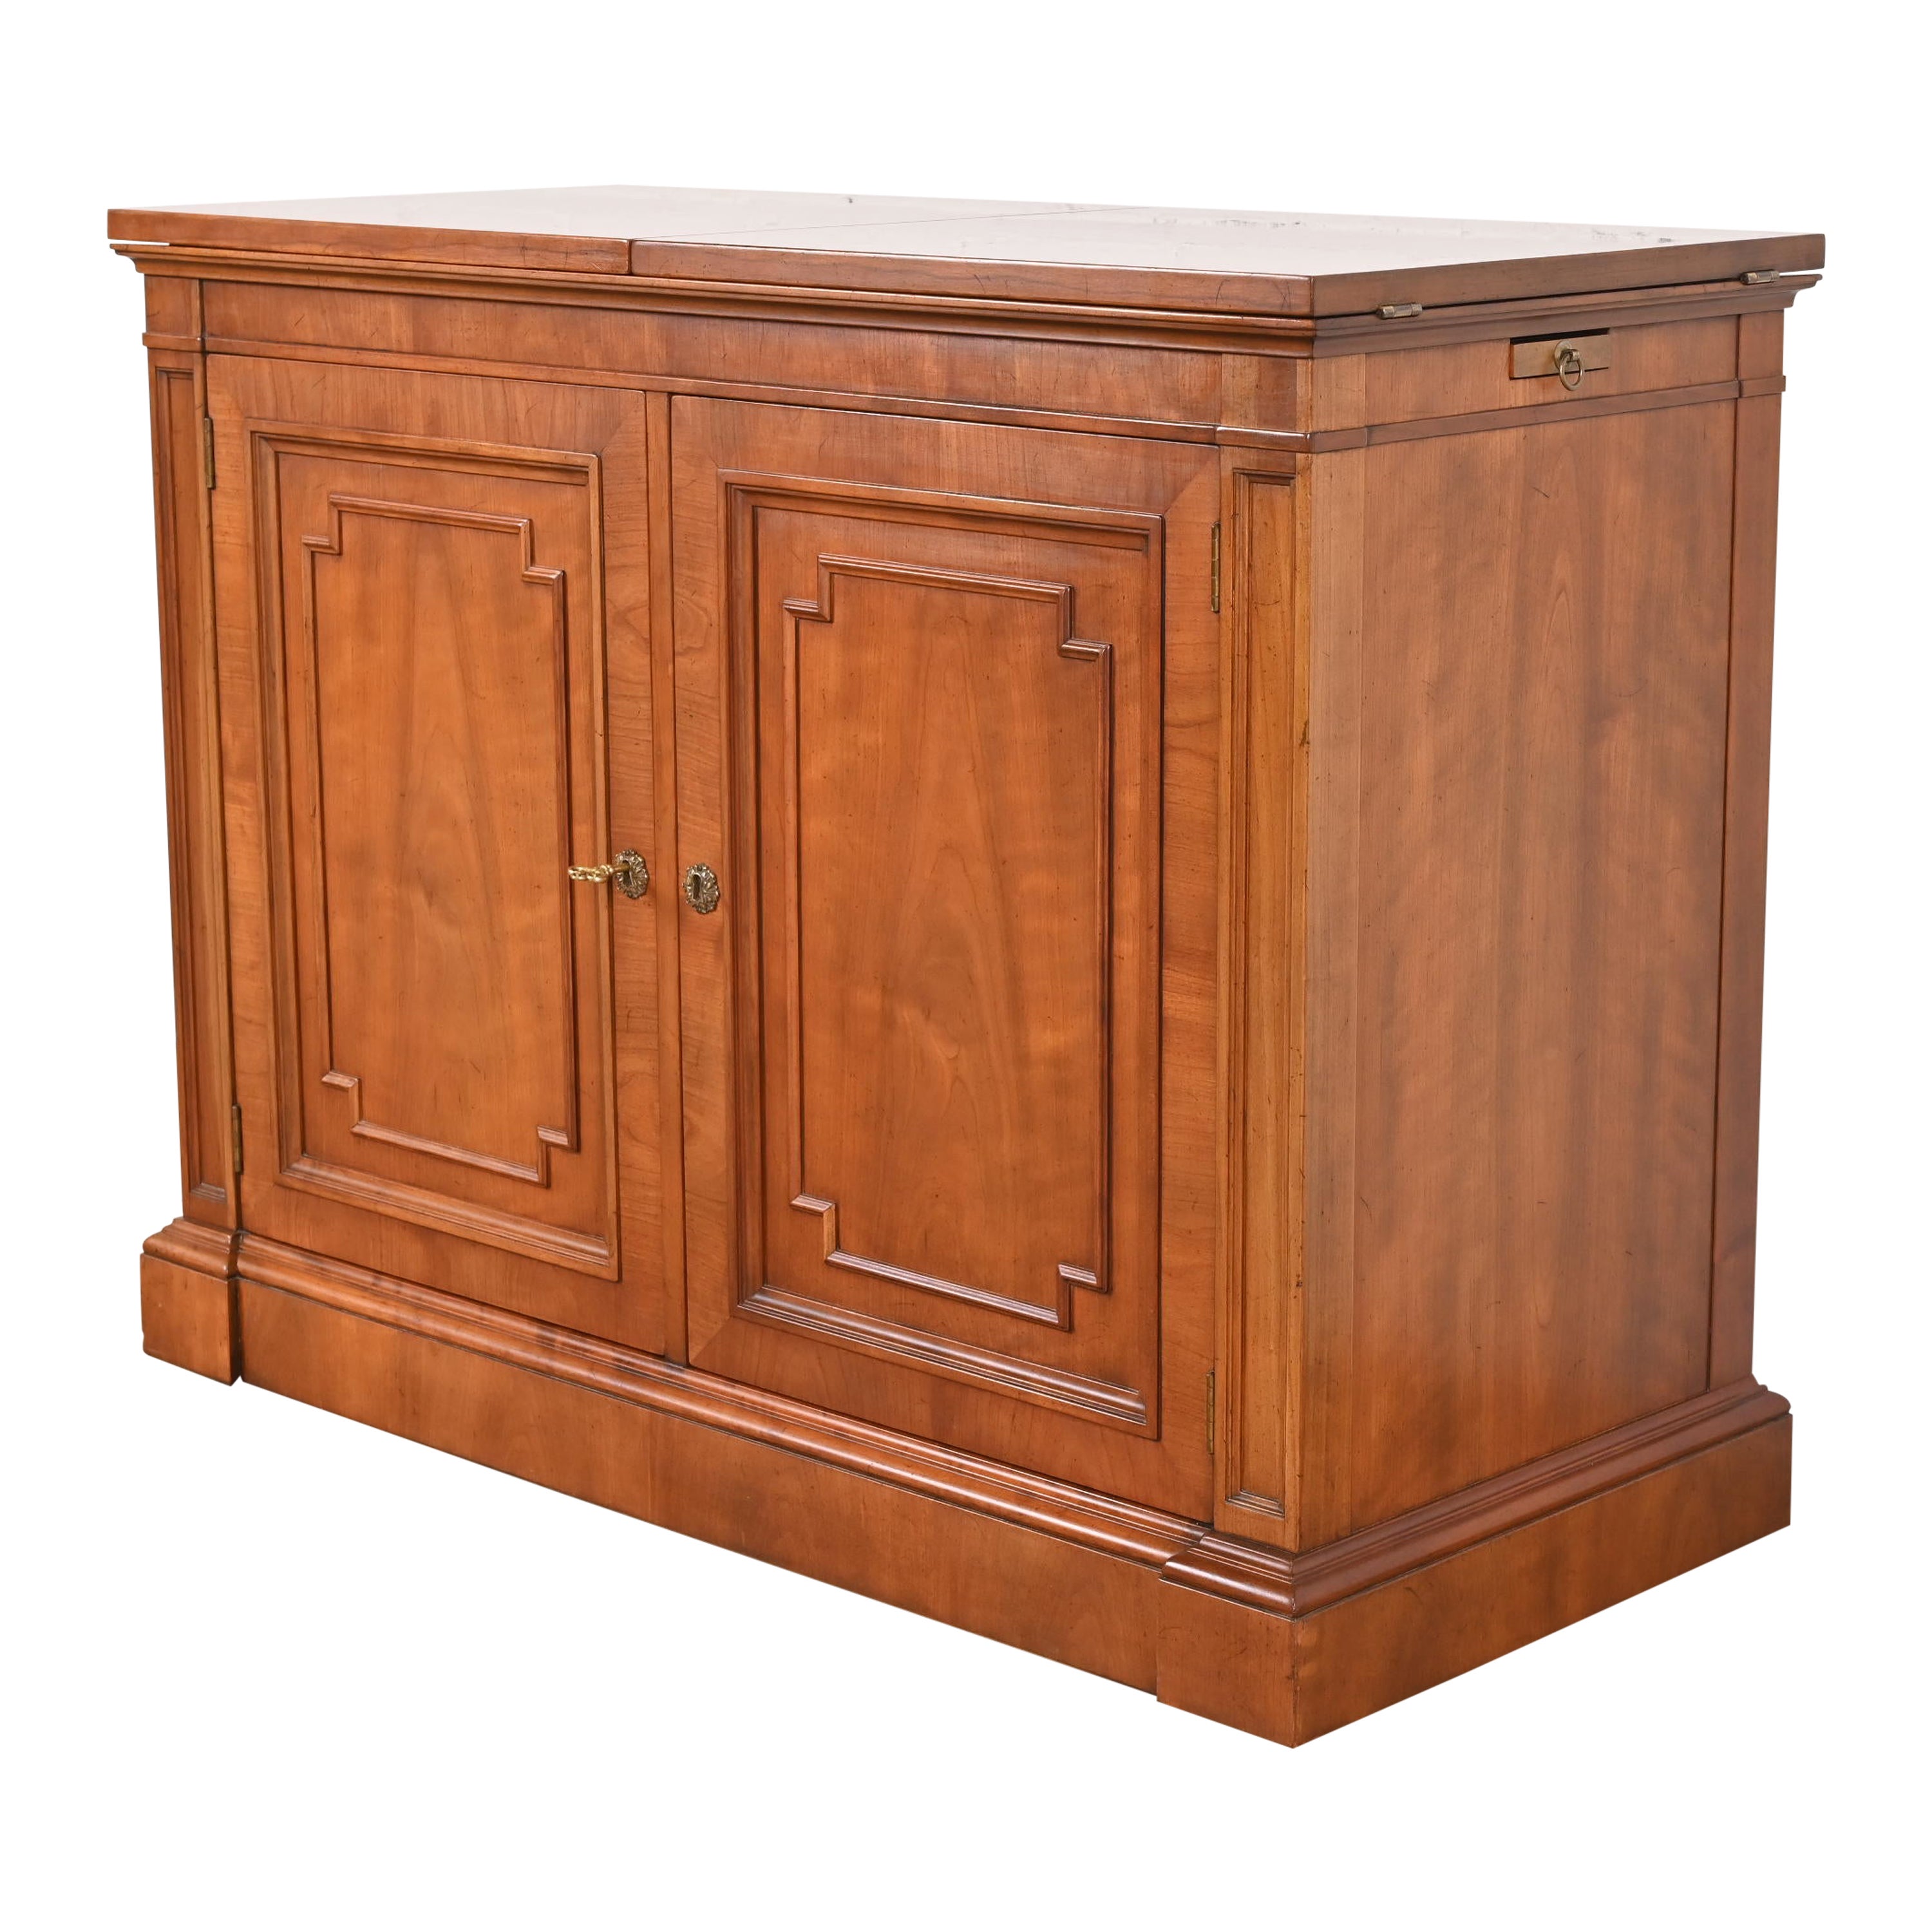 Kindel Furniture French Regency Cherry Wood Flip Top Rolling Bar Cabinet